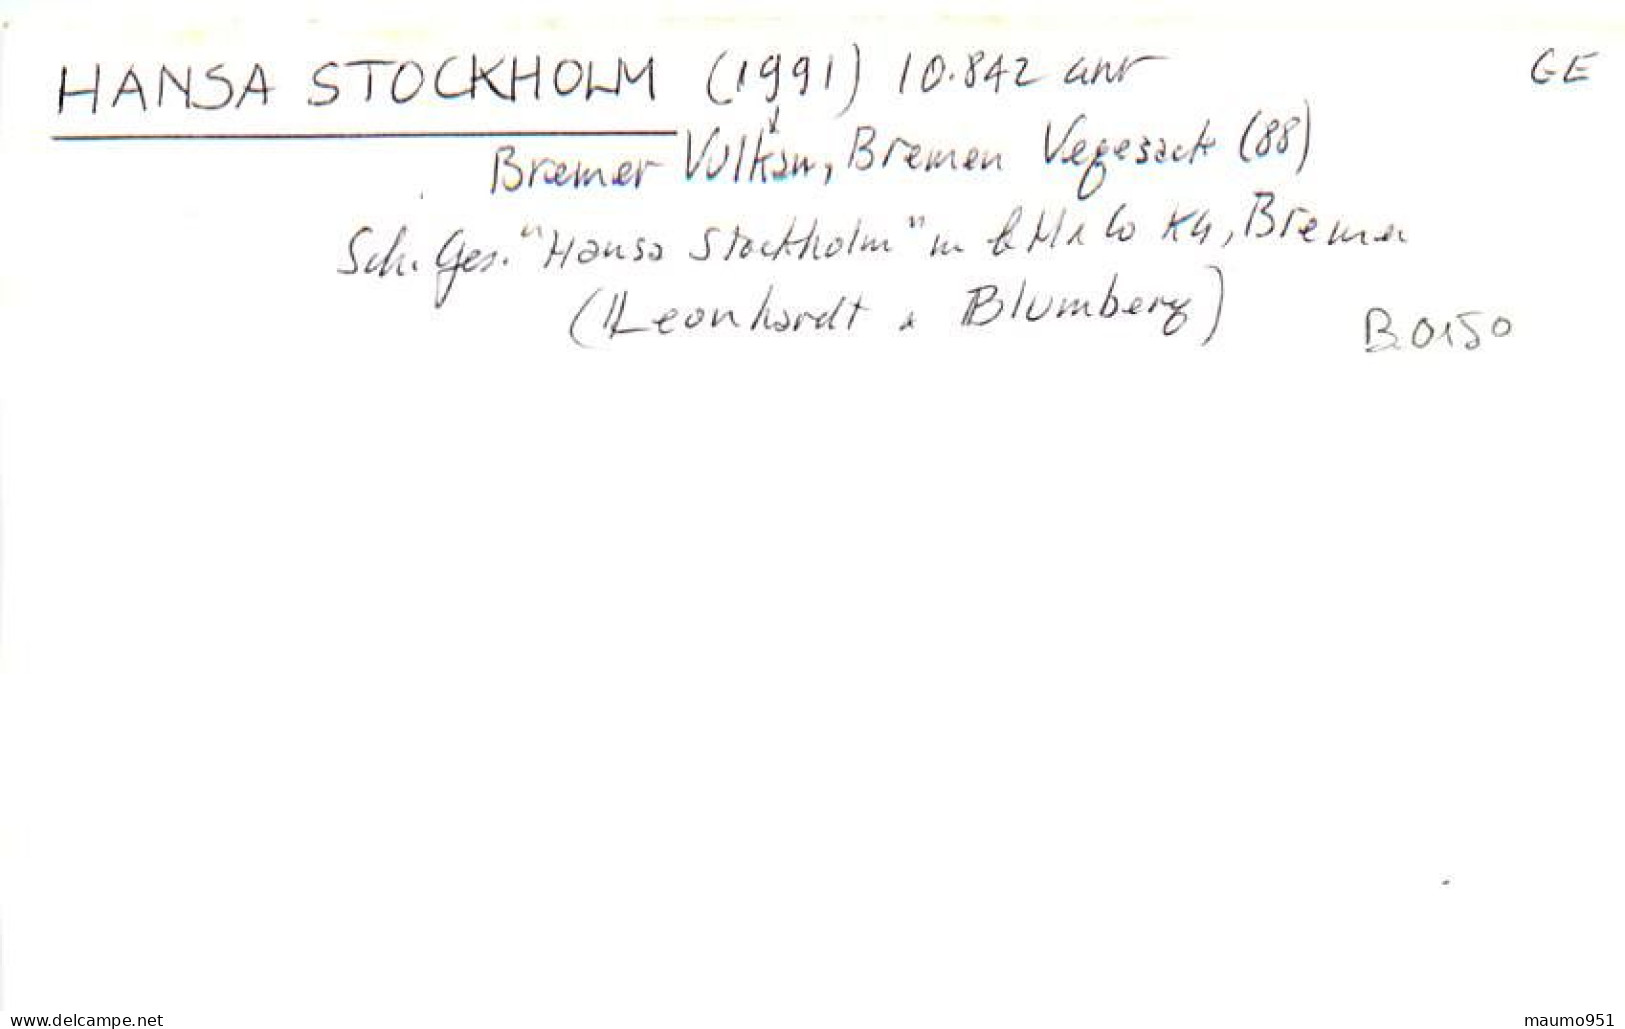 150 CLICHE BATEAU COMMERCE - LE HANSA STOCKHOLM 1991 - CATEGORIE 10842TONNES - FORMAT CPA N° B 0150 - Bateaux